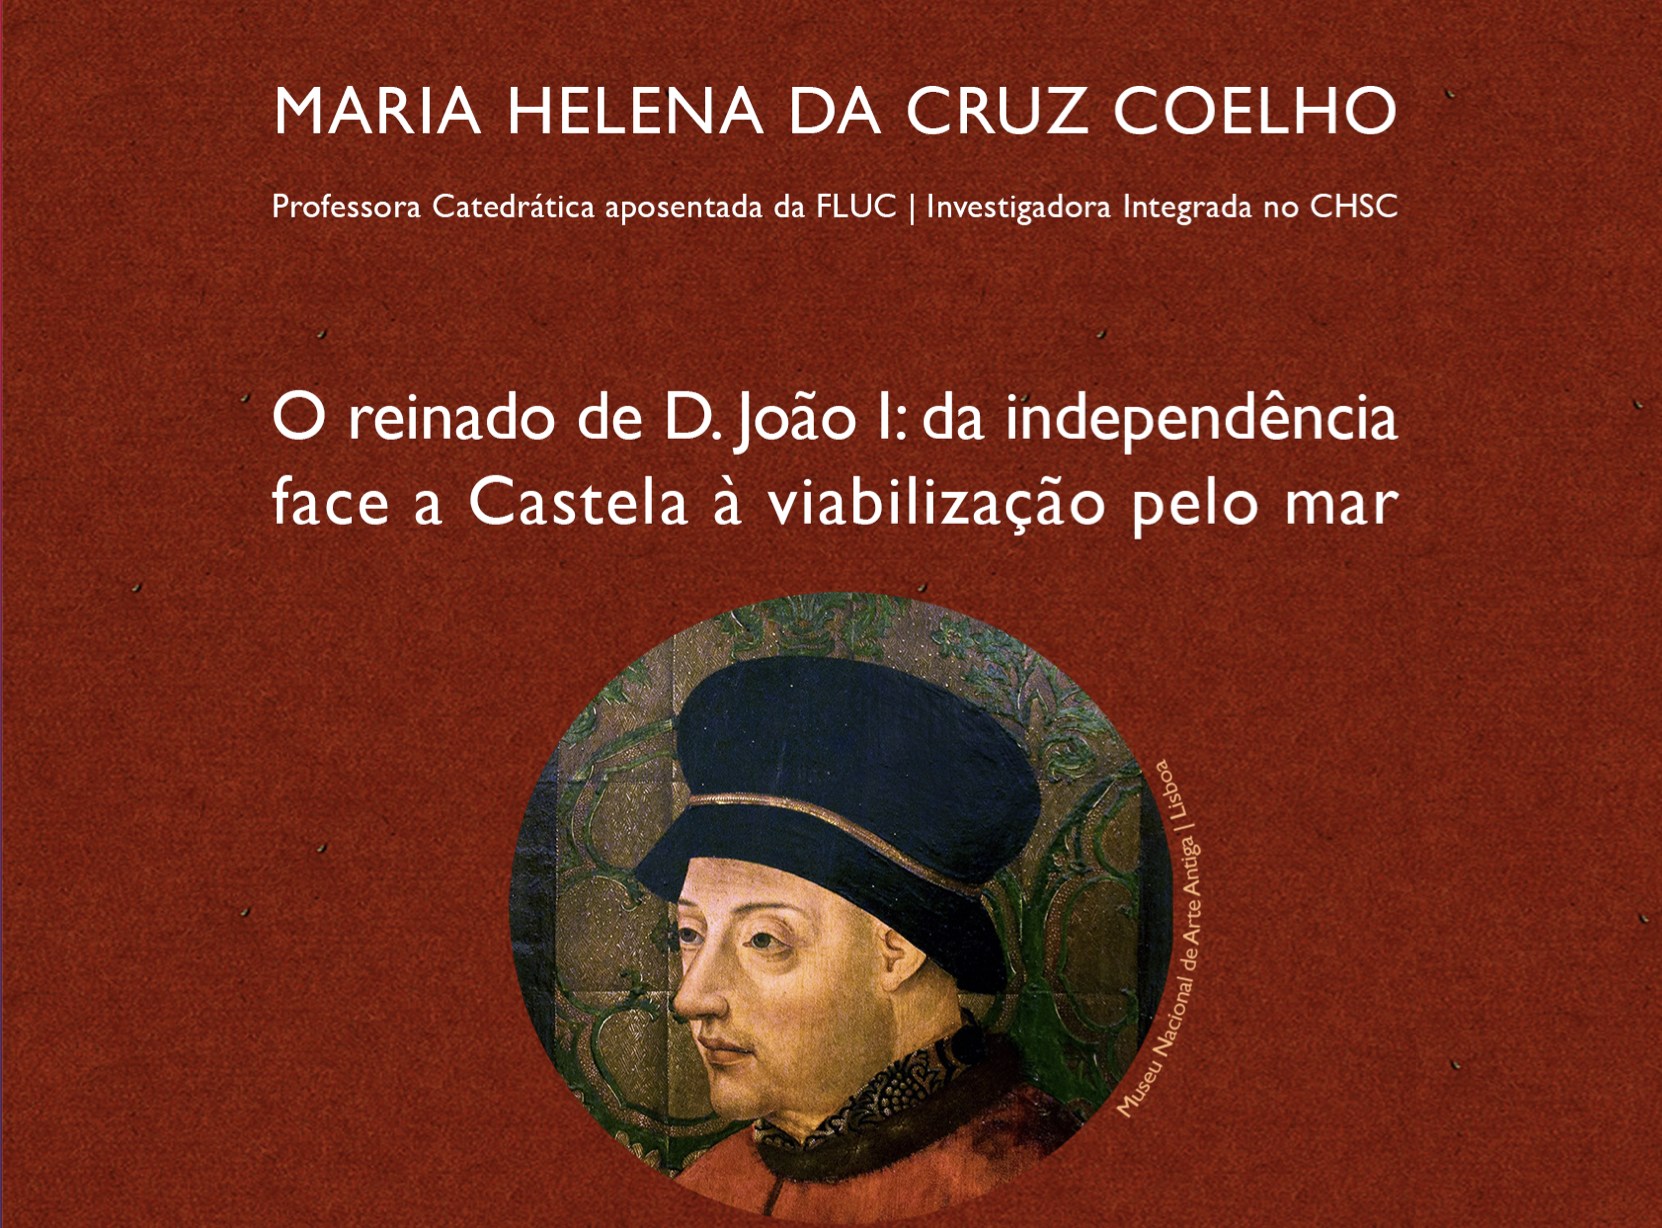 Conference by Maria Helena da Cruz Coelho: O reinado de D. João I: da independência face a Castela à viabilização pelo mar